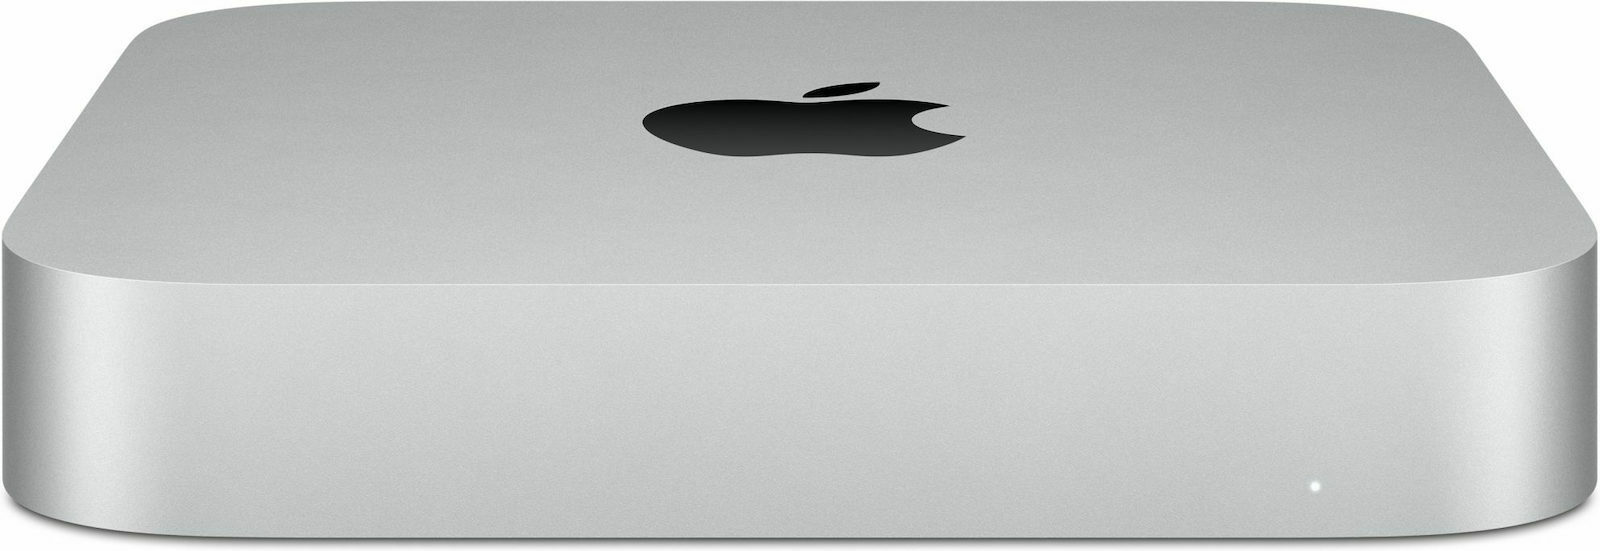 Apple Mac mini (2020) (M1/8GB DDR4/256GB SSD/MacOS) | Skroutz.gr